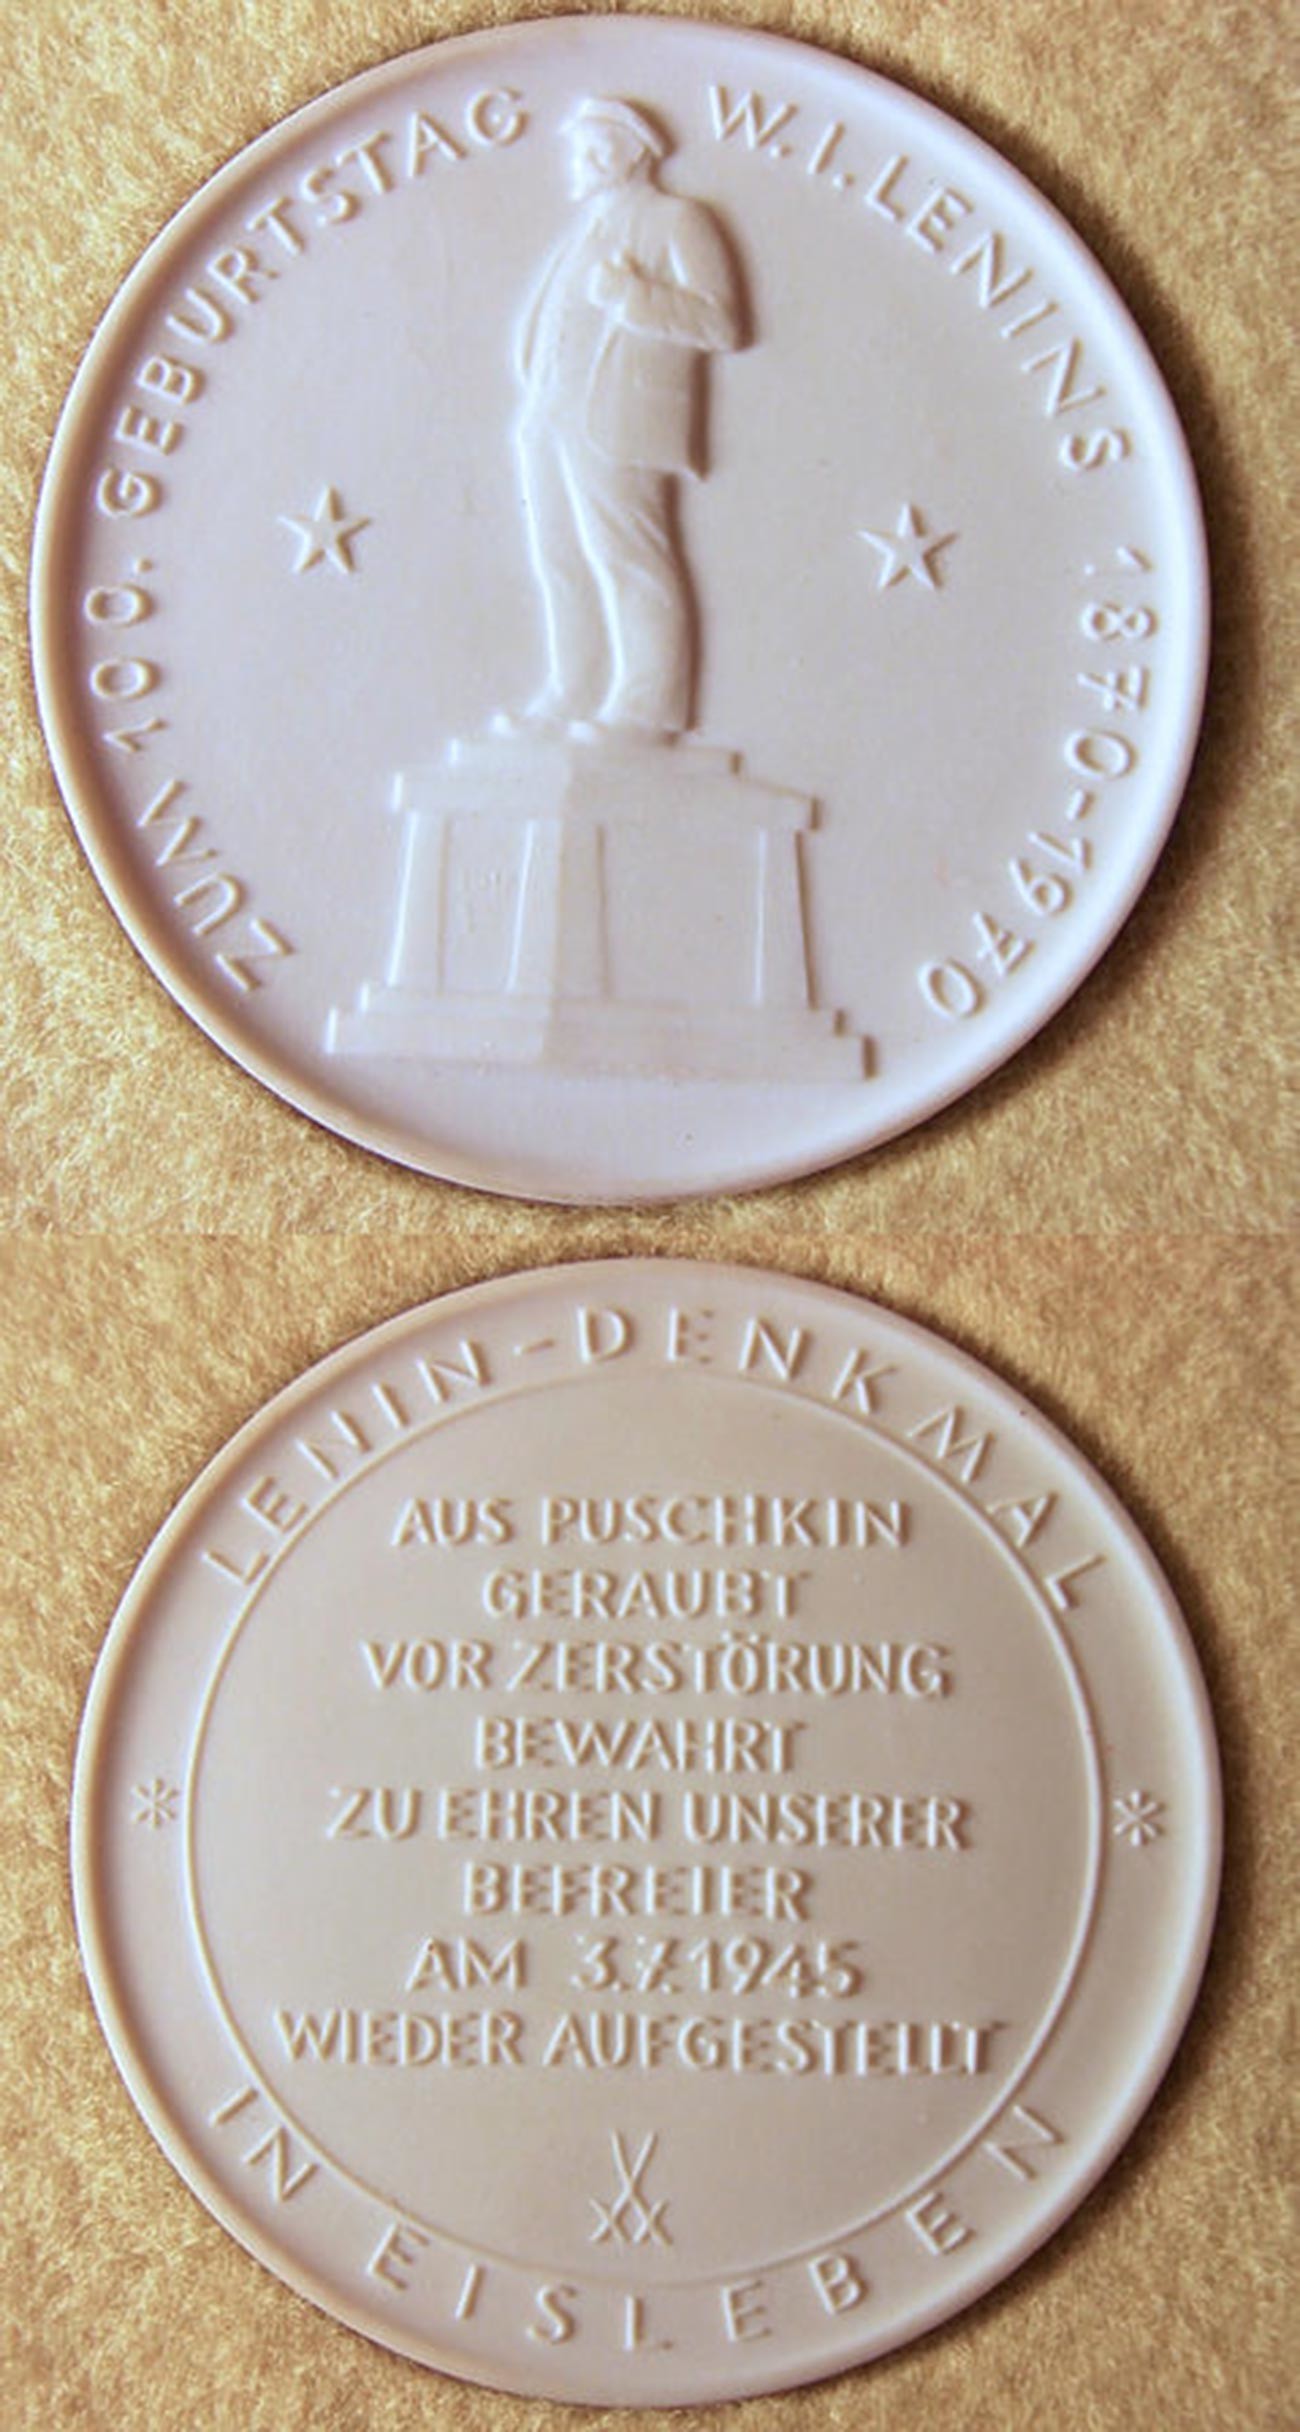 Medaglia commemorativa (1970) in porcellana di Meissen per il 100° anniversario del compleanno di Lenin, con l'immagine del monumento a Lenin a Eisleben